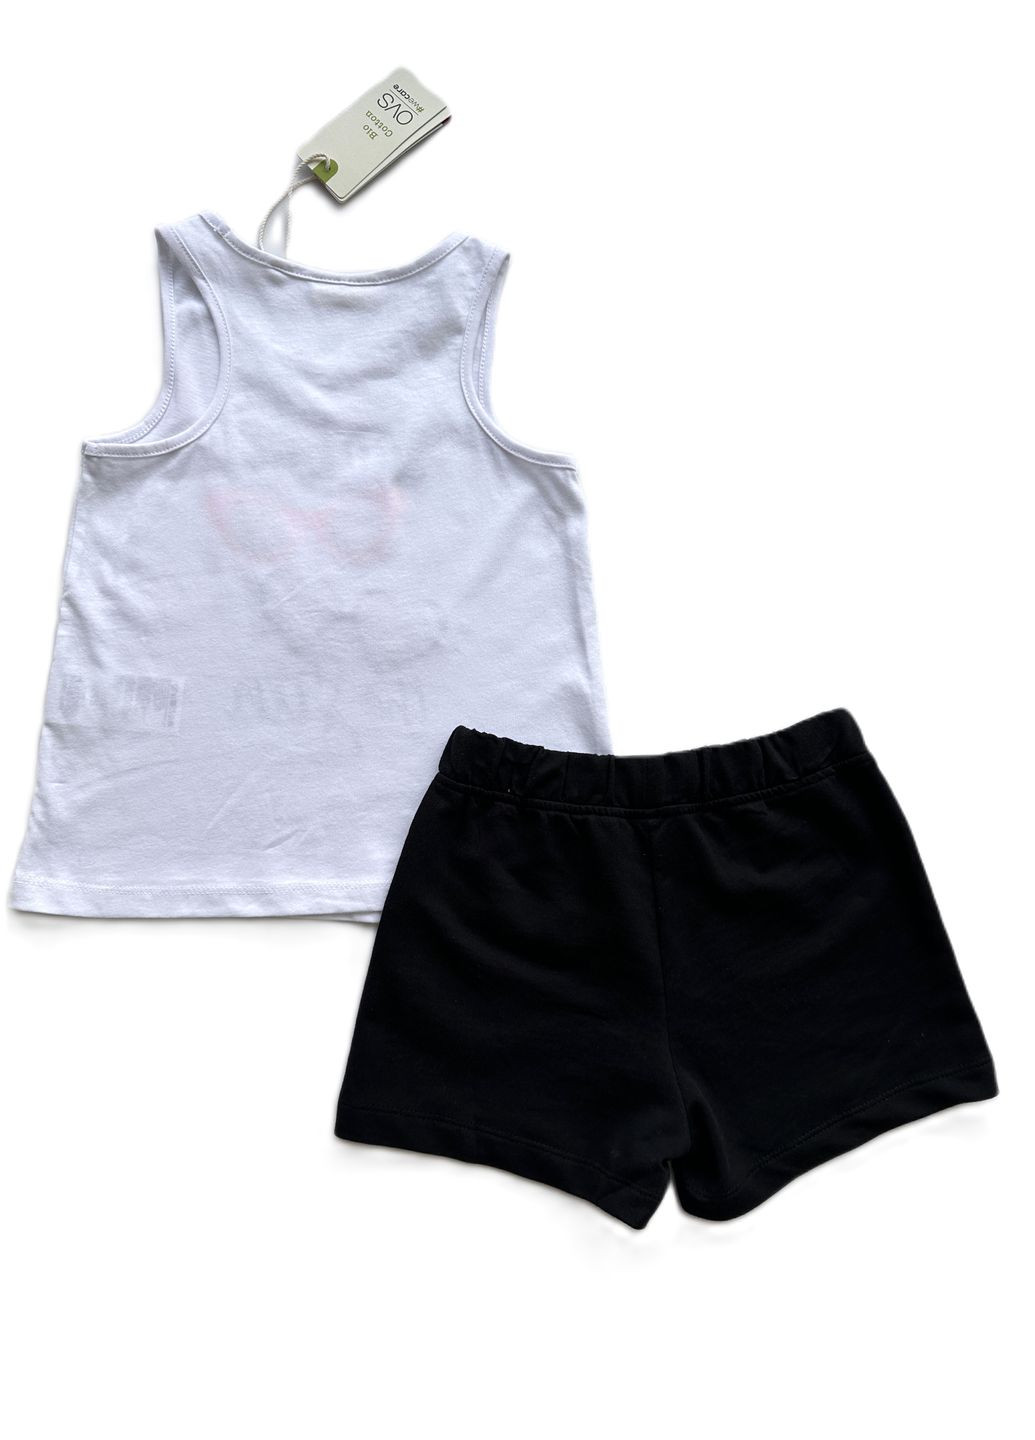 Черно-белый летний комплект костюм для девочки 2000-17 белая майка с очками + шорты трикотажные черные (116 см) OVS